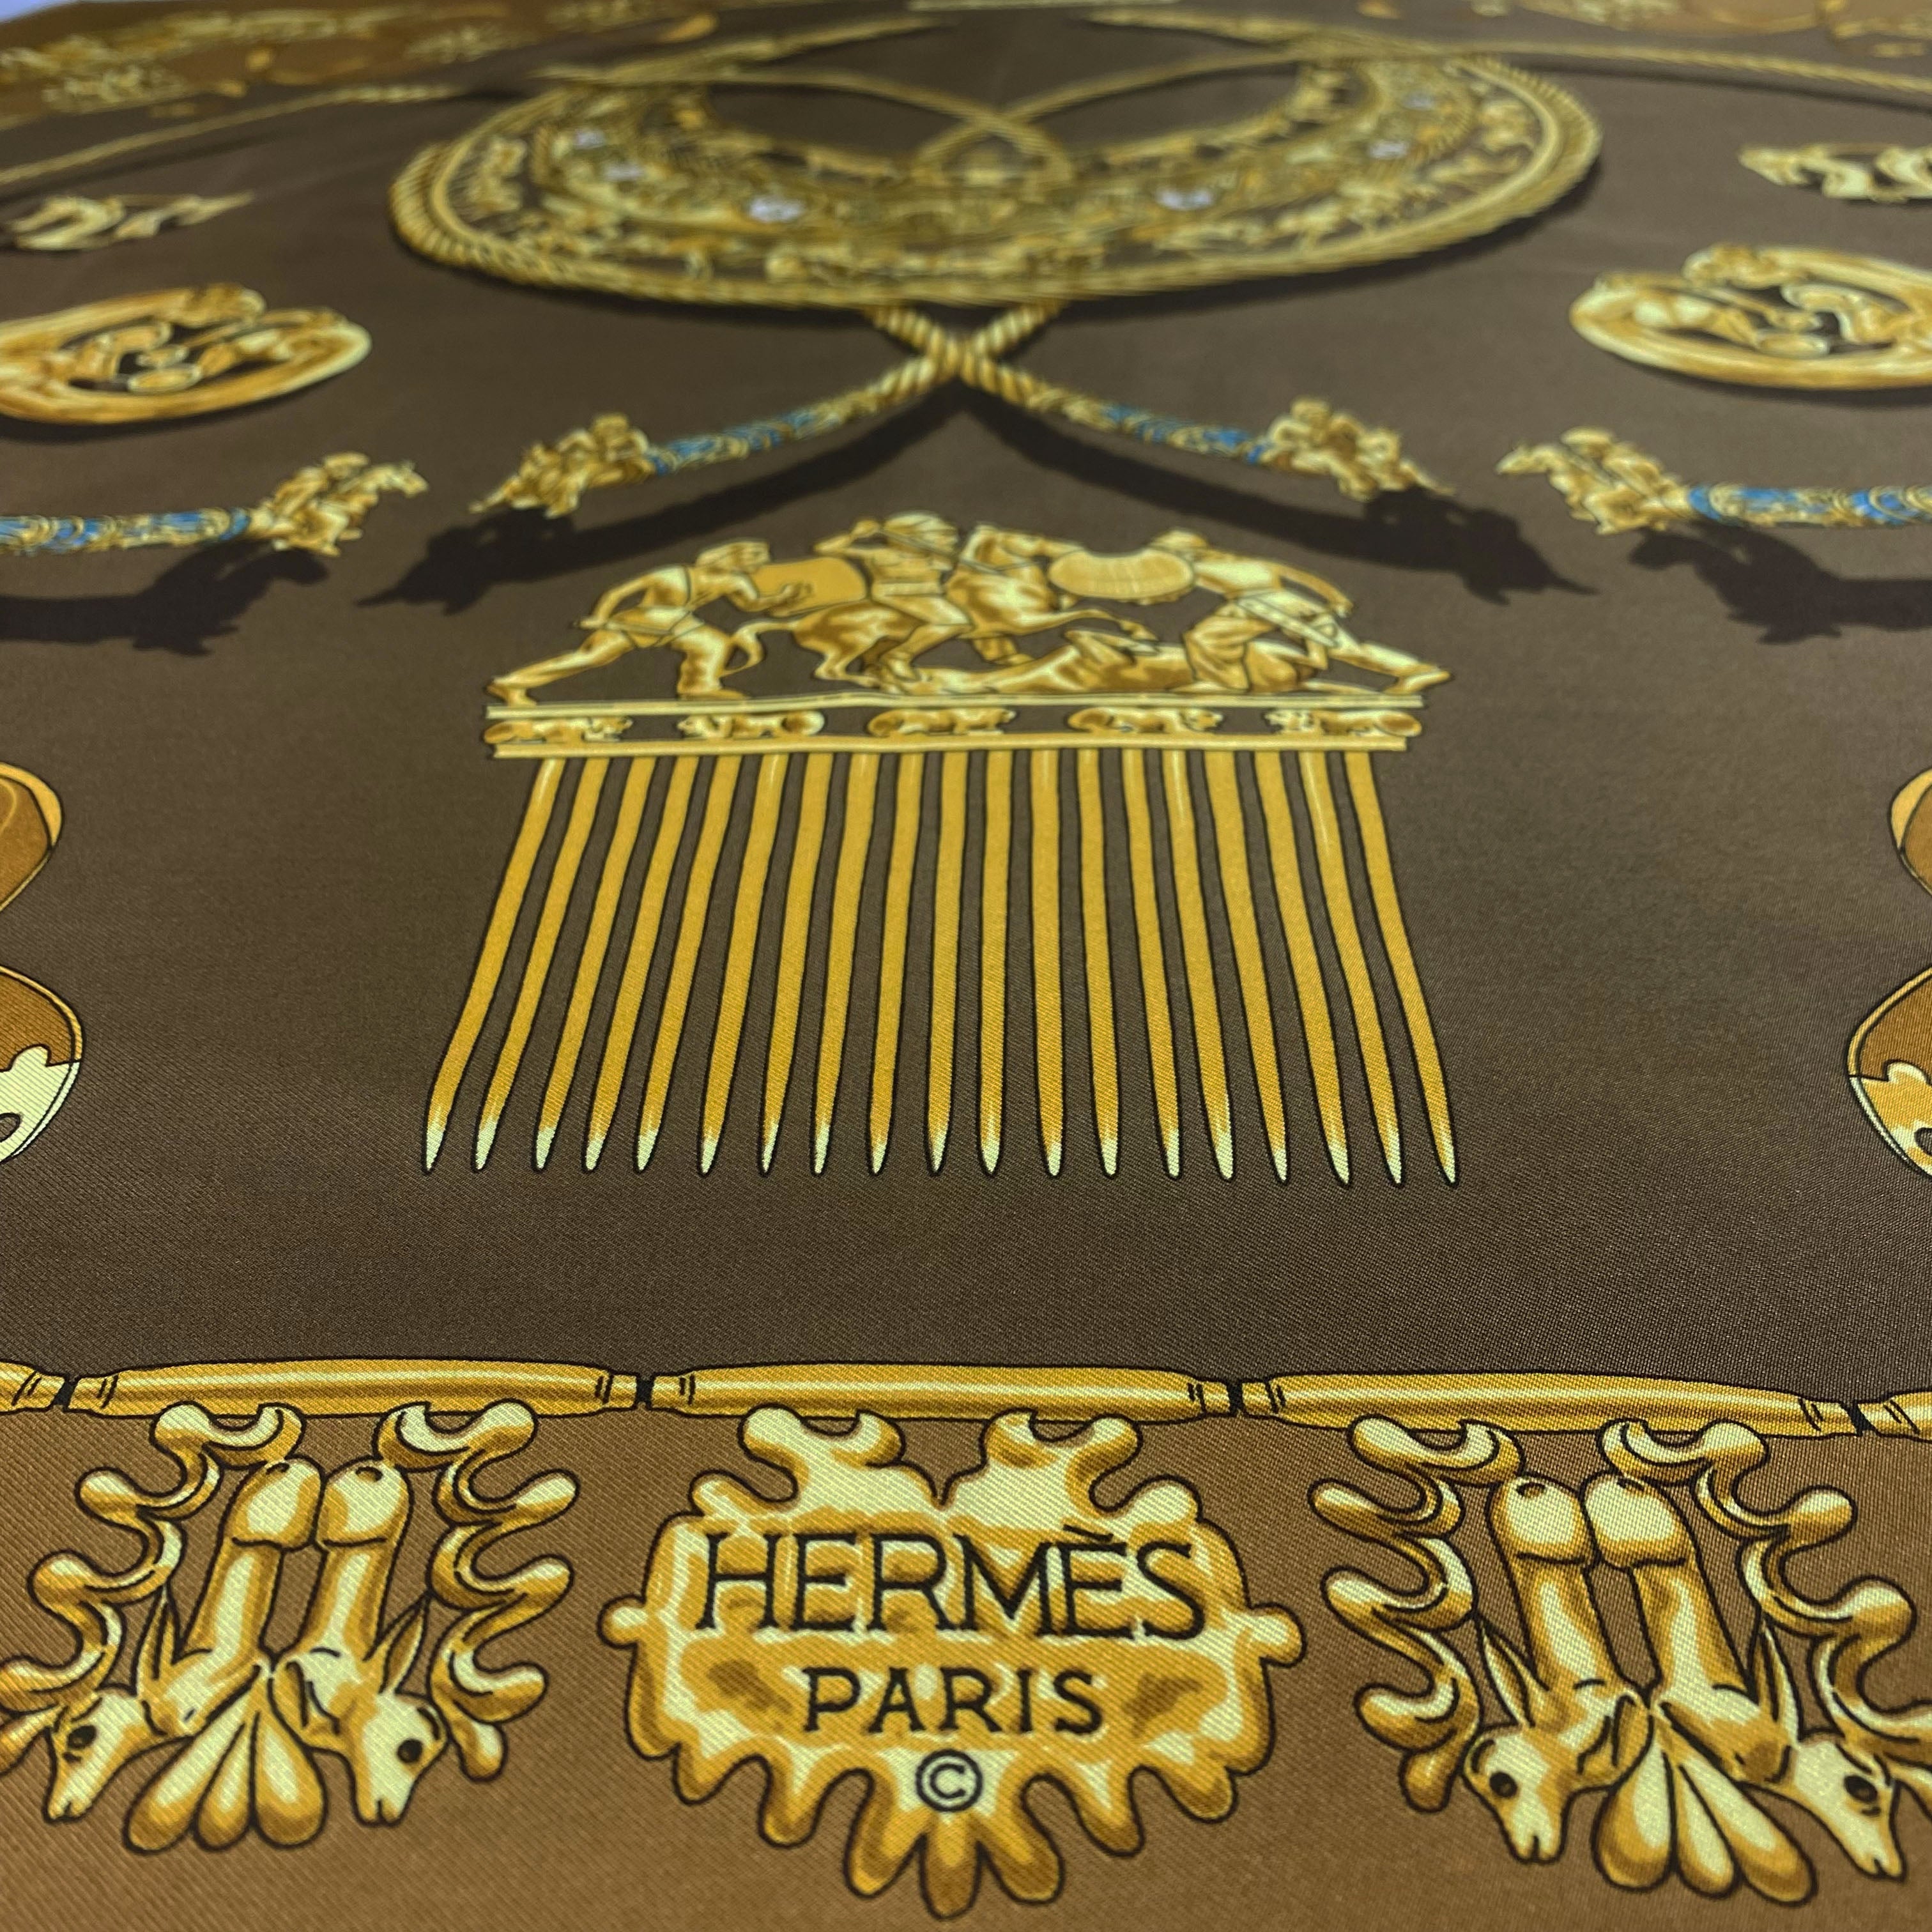 Carré Hermès - Les cavaliers d'or